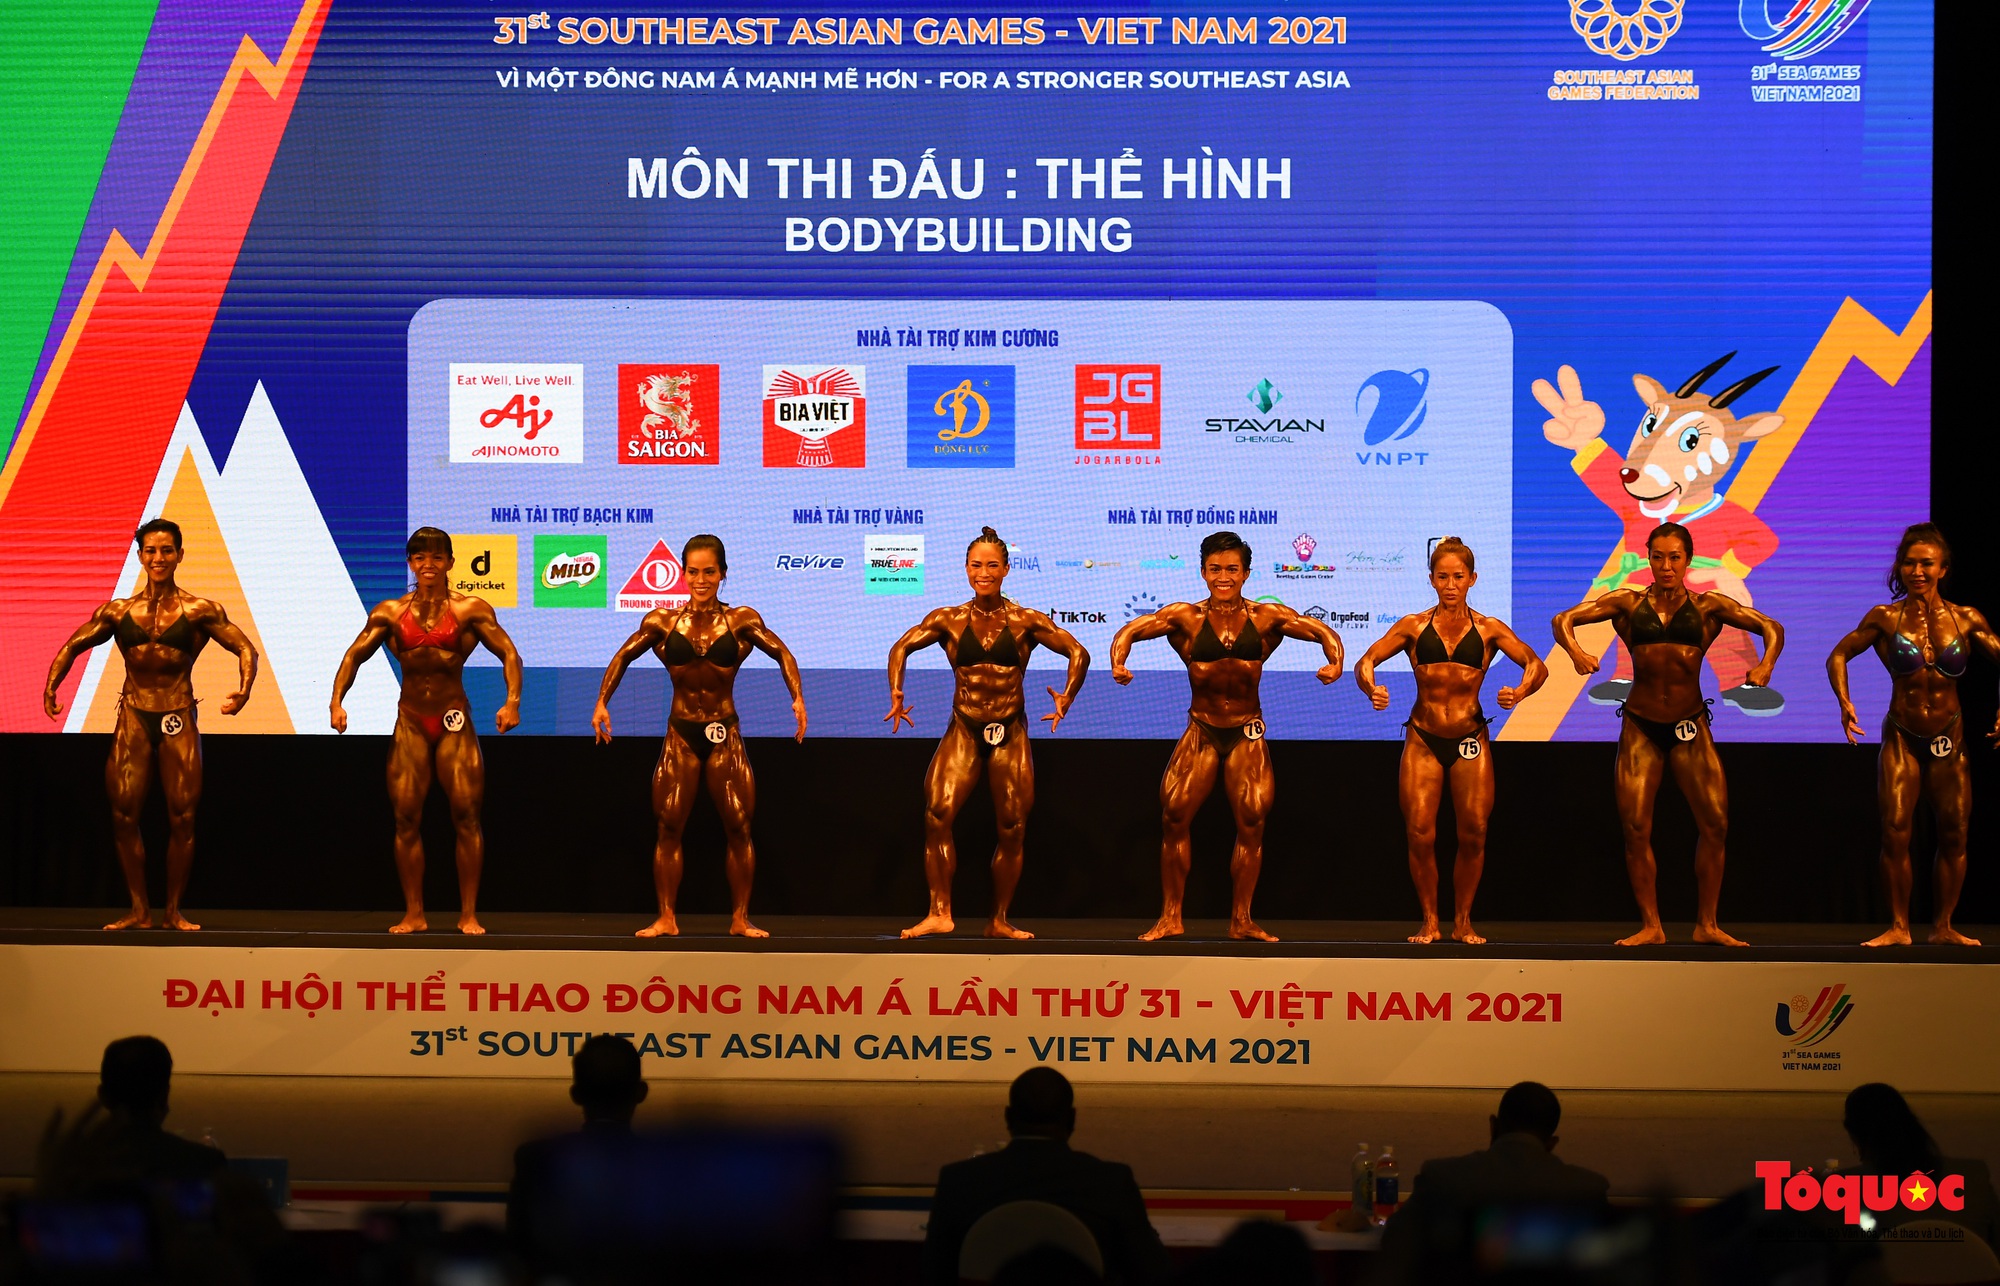 Thể hình Việt Nam liên tiếp gặt hái thêm 2 HCV trong ngày thi đấu cuối cùng - Ảnh 1.